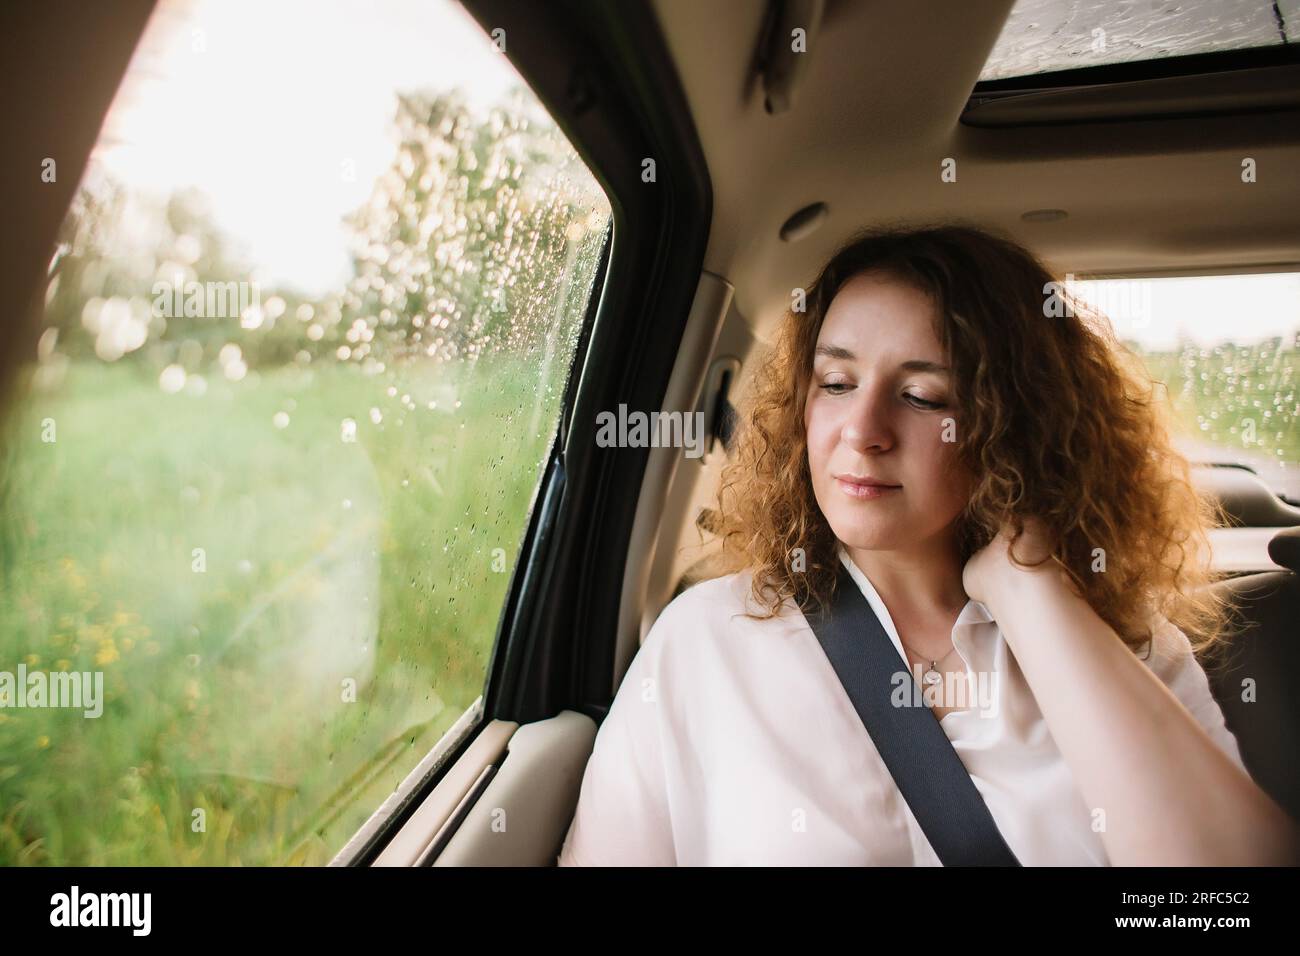 Fröhliche, positive, lockige junge Frau in Freizeitkleidung, die auf dem Rücksitz sitzt, den Sicherheitsgurt anschnallt und wegschaut Stockfoto